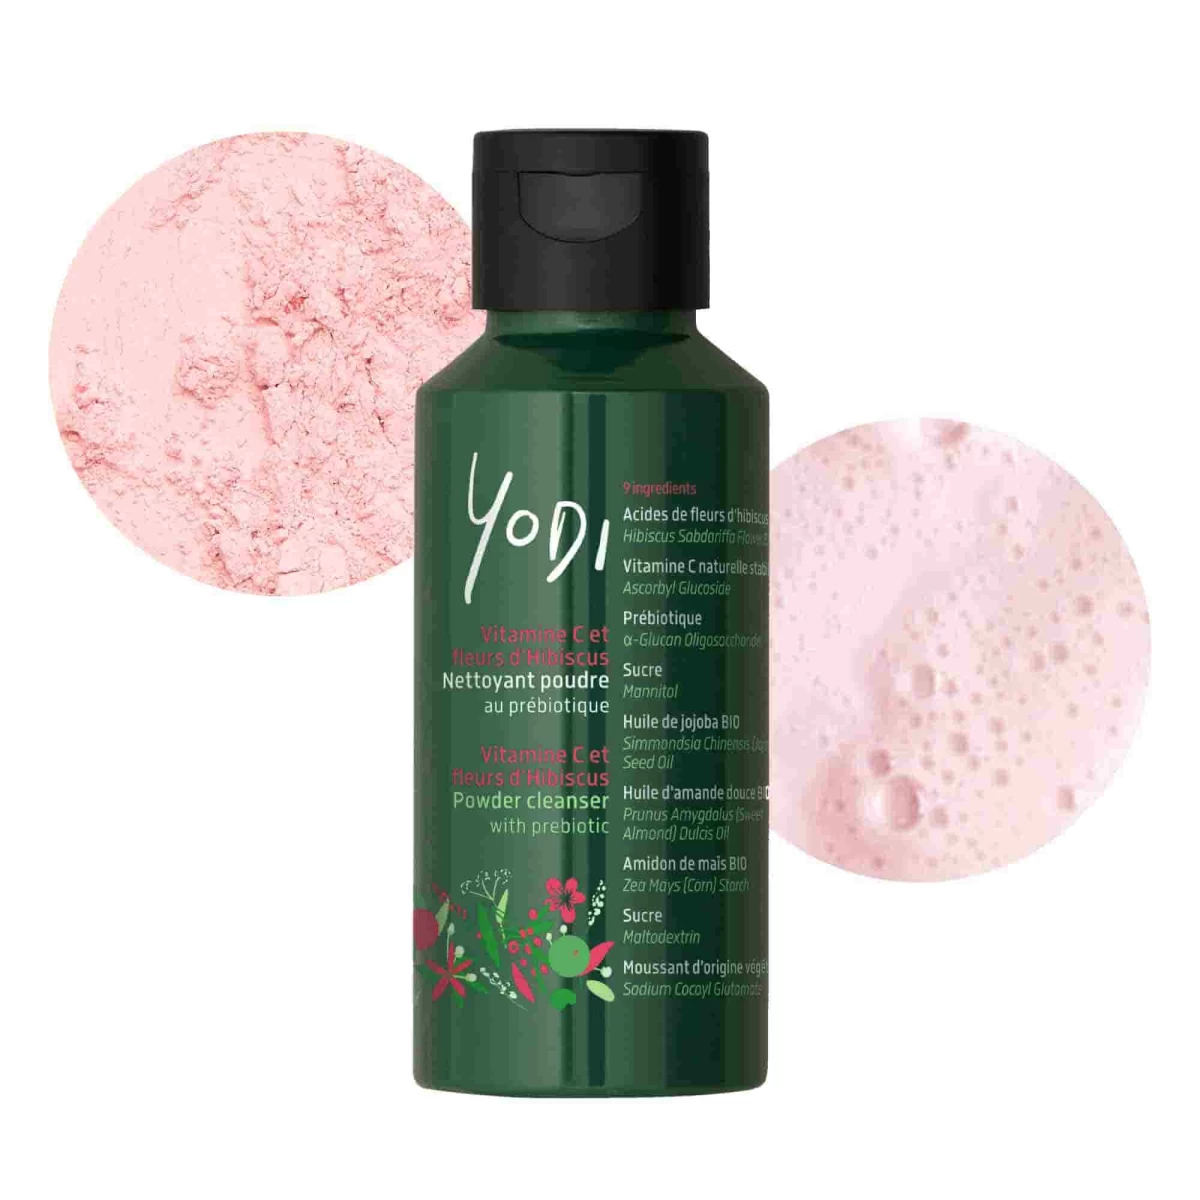 Nettoyant visage en poudre au prébiotique vitamine C et fleurs d'hibiscus - yodi